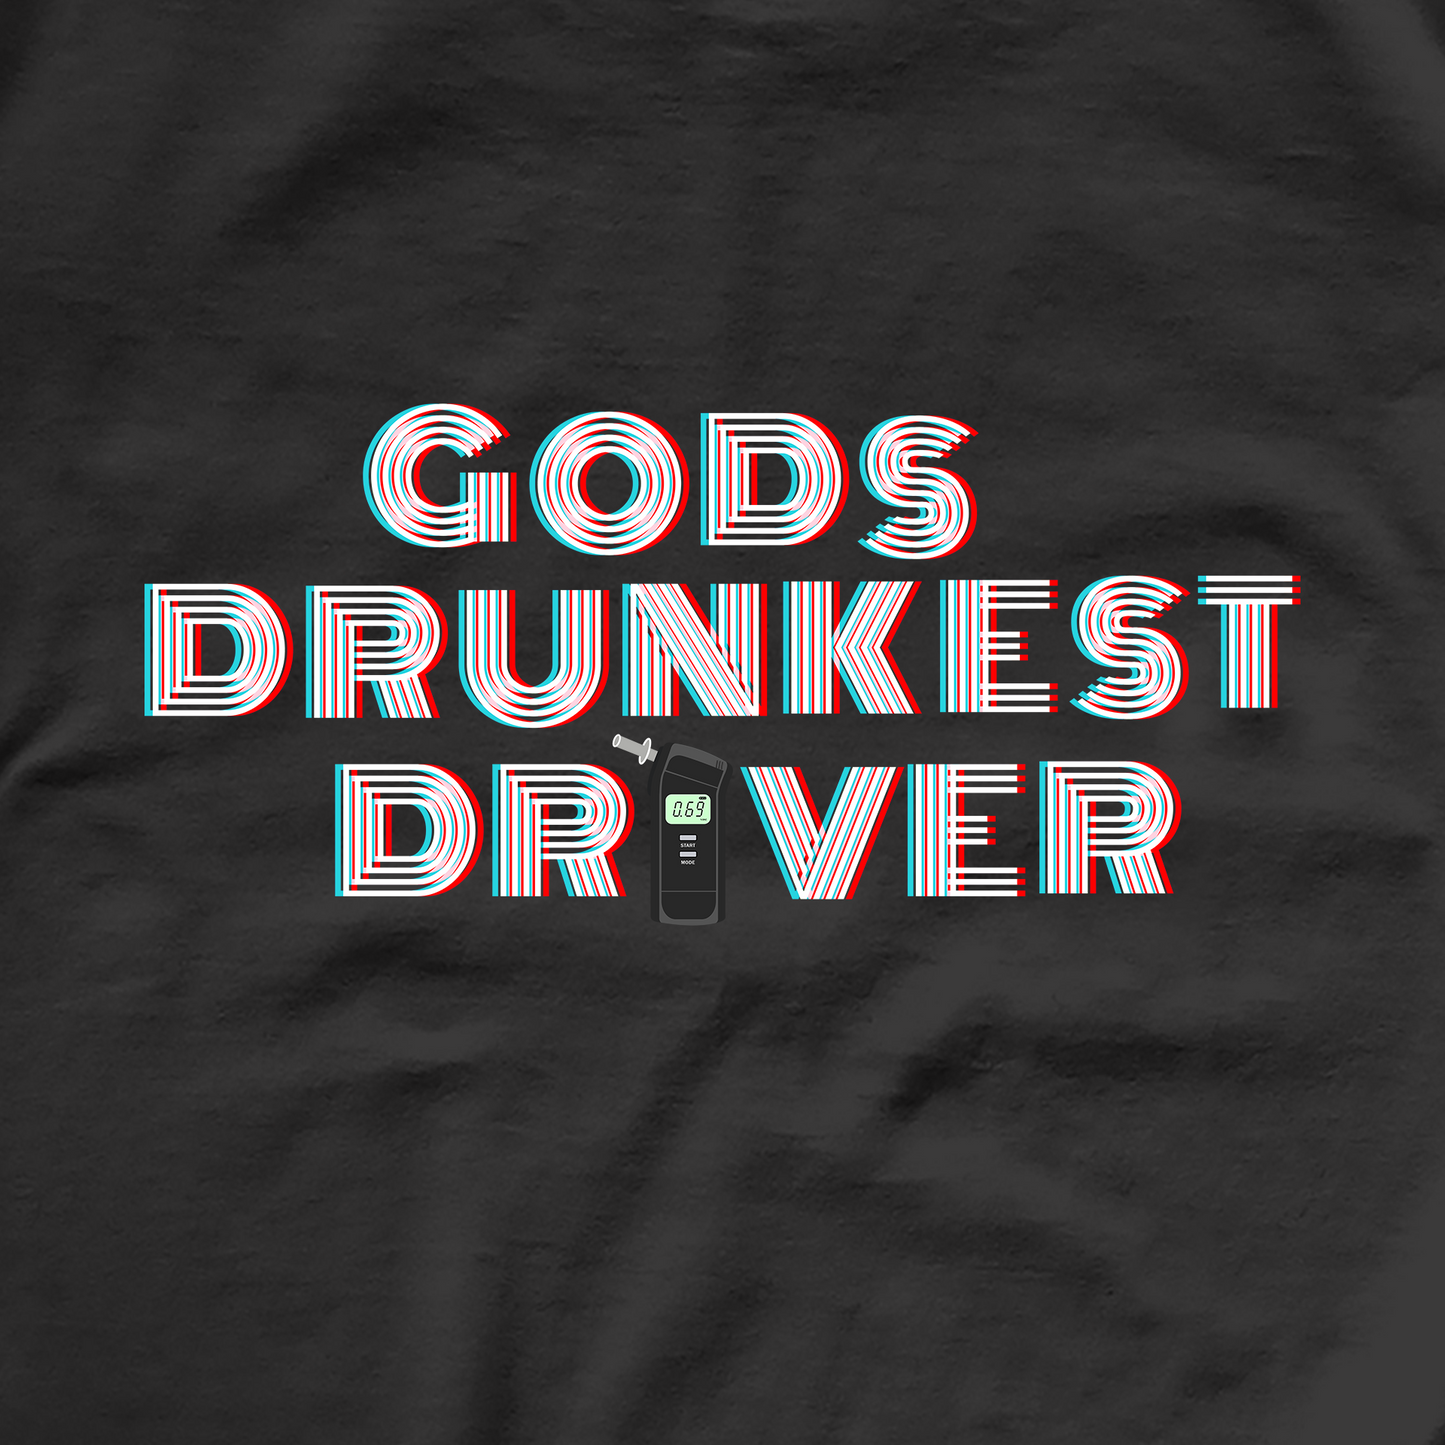 Gods Drunkest Driver Tee